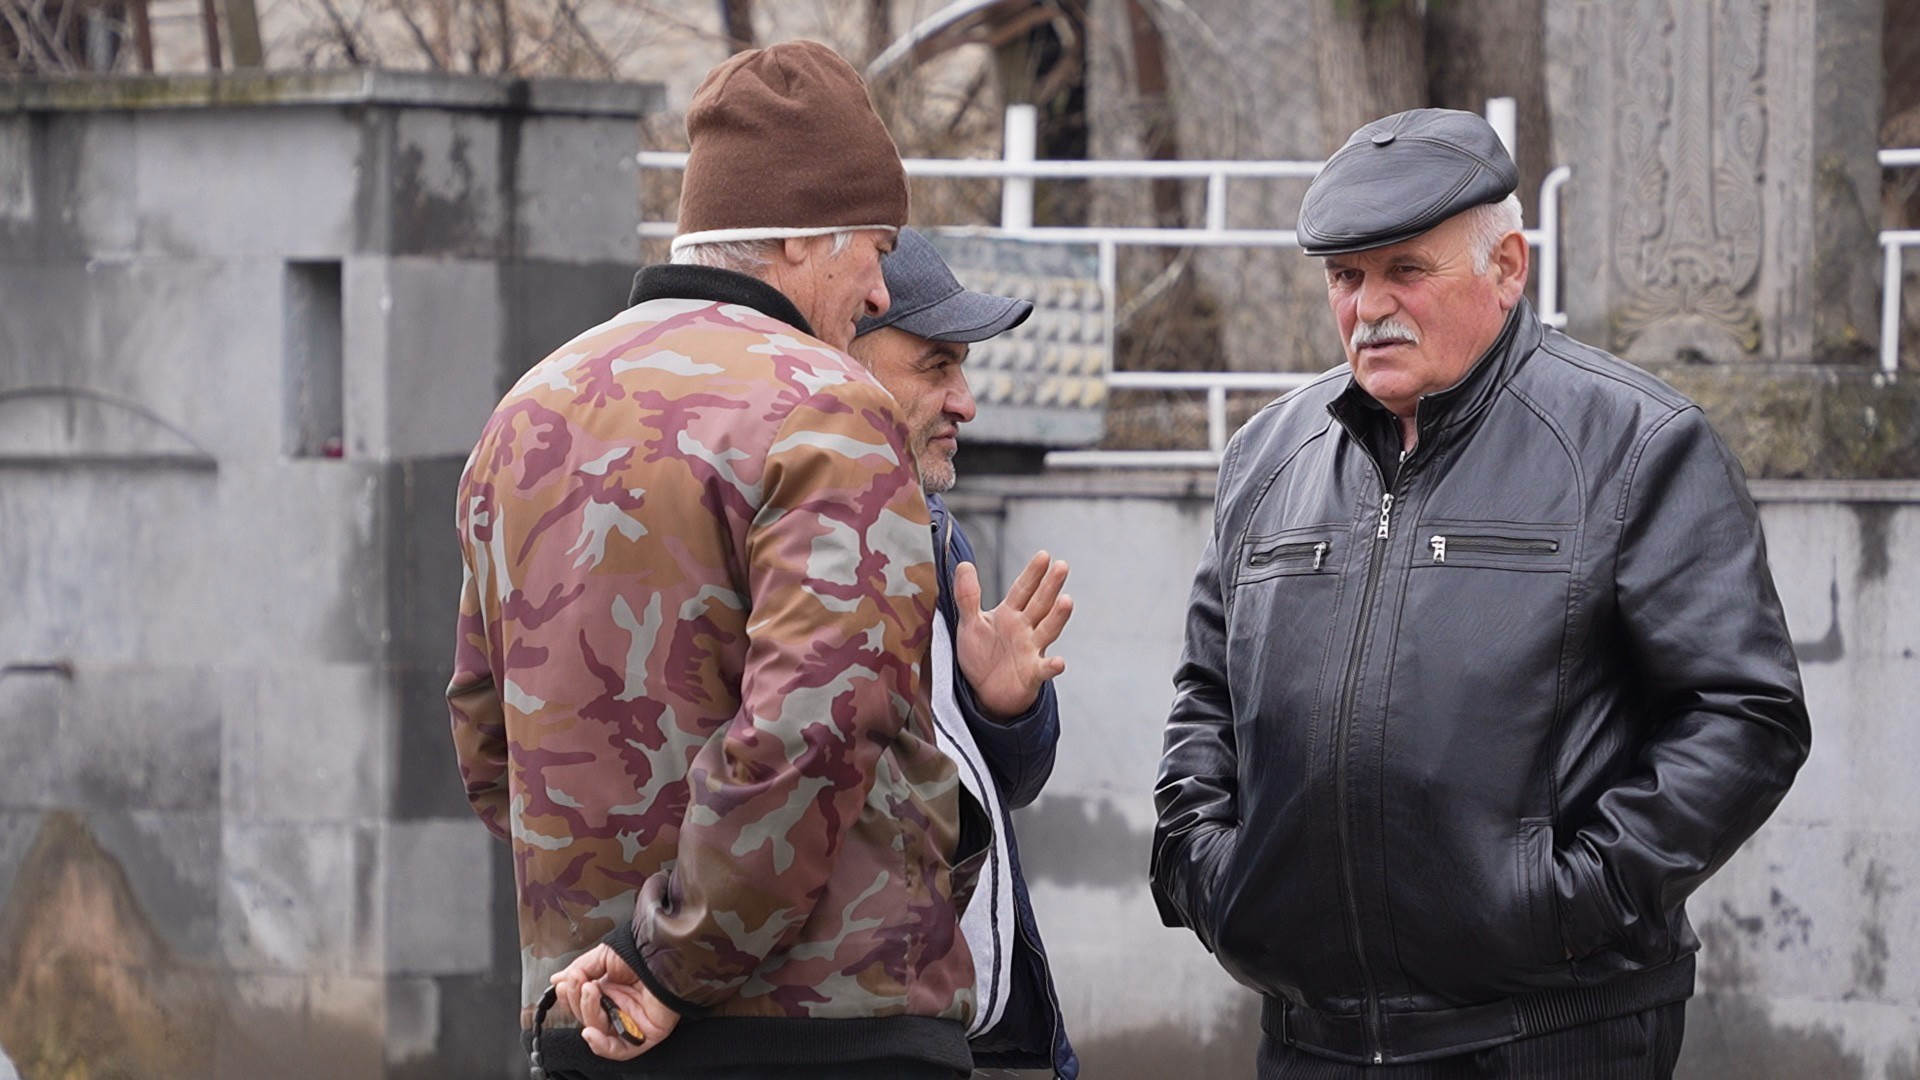 Жители Воскепара. Фото: Арман Караджян / JAMNews